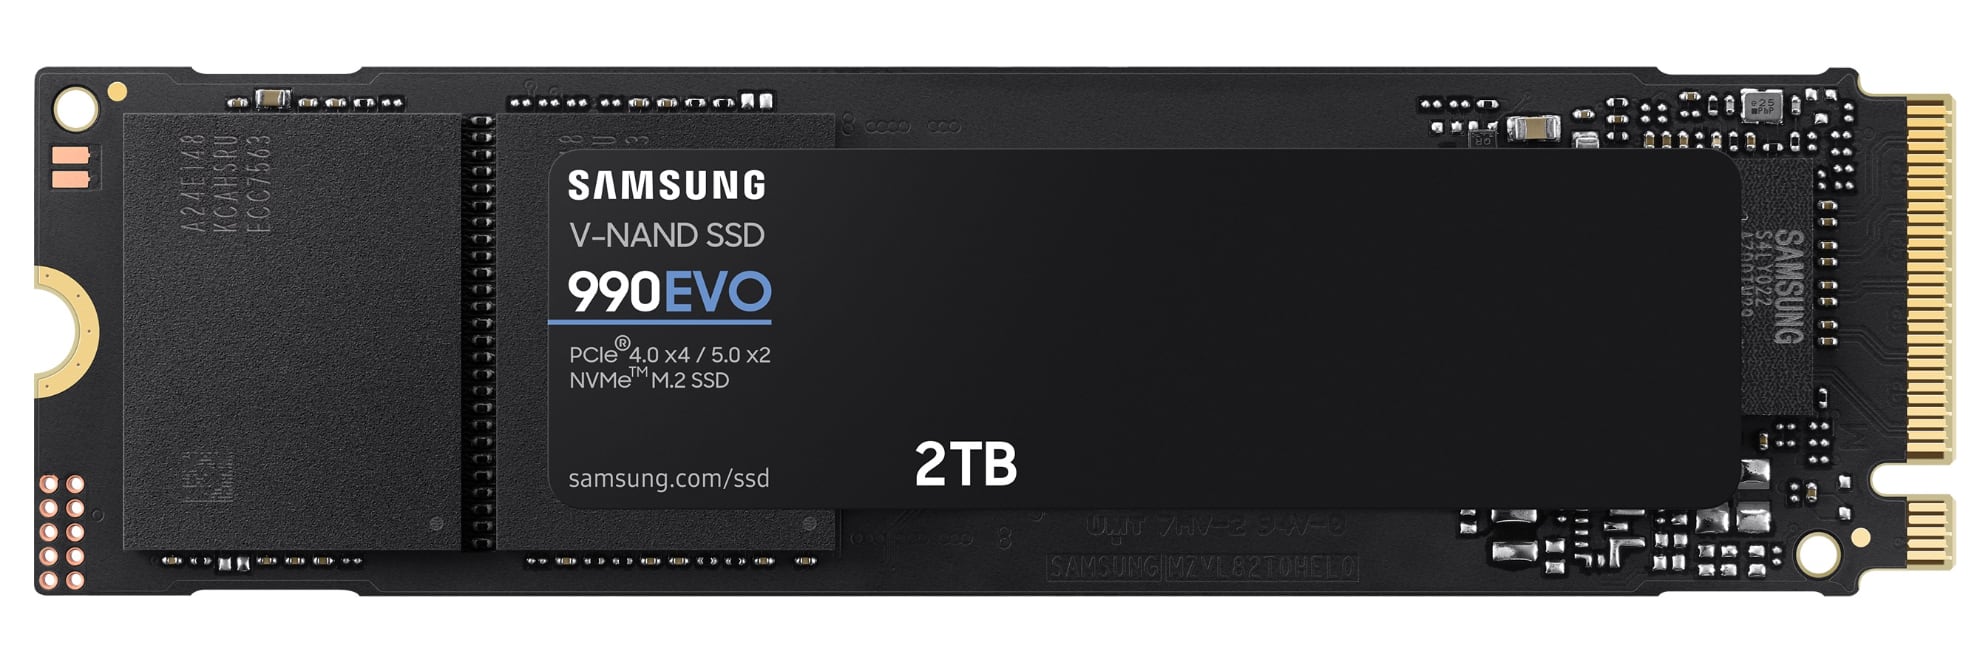 Samsung kondigt snelle SSD 990 EVO aan, deze kost $210 voor 2 TB-2